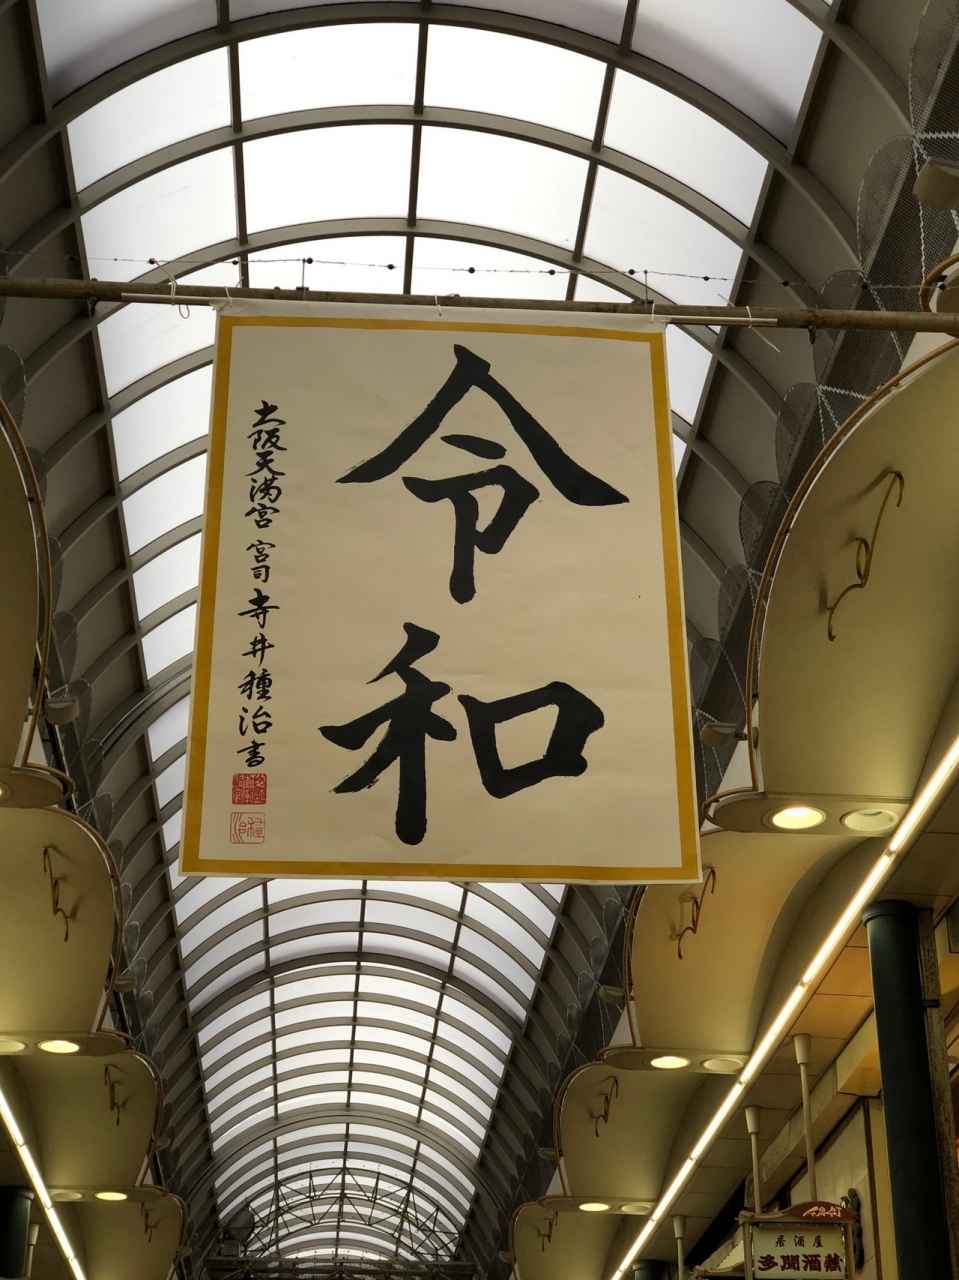 Gwの喧騒の後 大阪 横浜 広島を巡る旅 横浜 神奈川県 の旅行記 ブログ By Yamaotokoy1さん フォートラベル